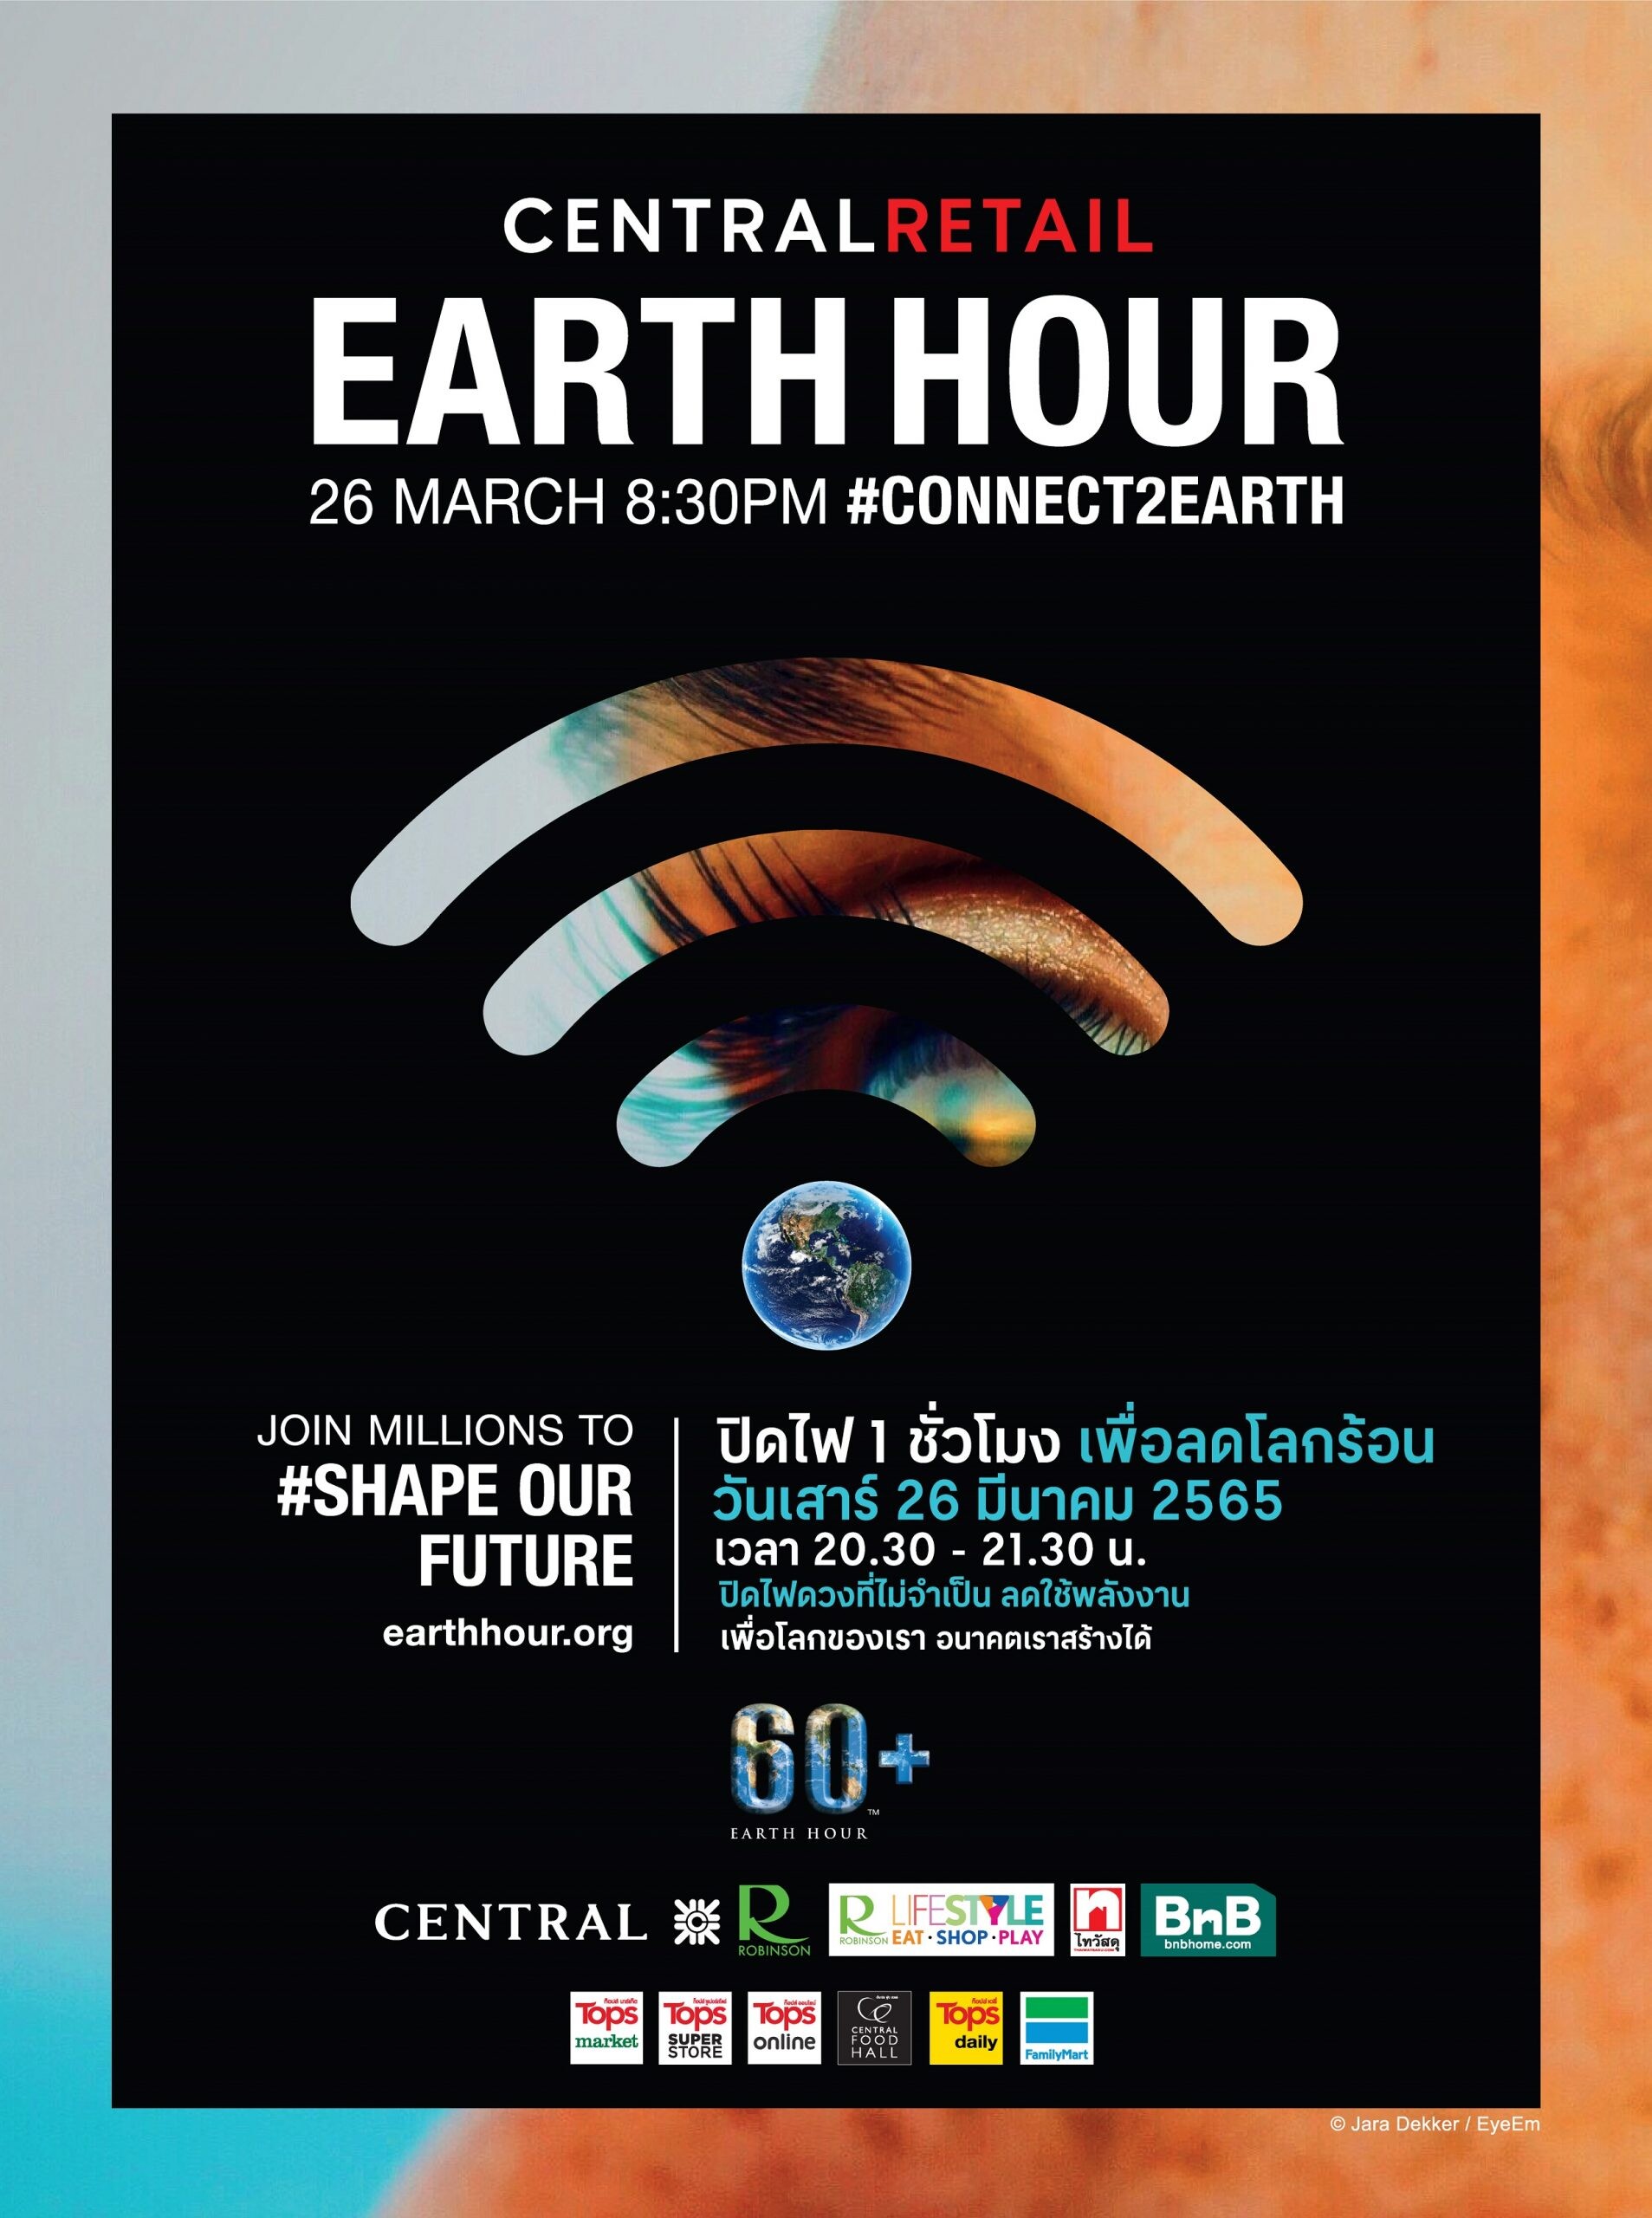 เซ็นทรัล รีเทล ร่วมรักษ์โลกผ่านแคมเปญ "60+ Earth Hour 2022"  ดีเดย์ปิดไฟหน้าร้าน 1 ชั่วโมง ทุกสาขาทั่วประเทศ